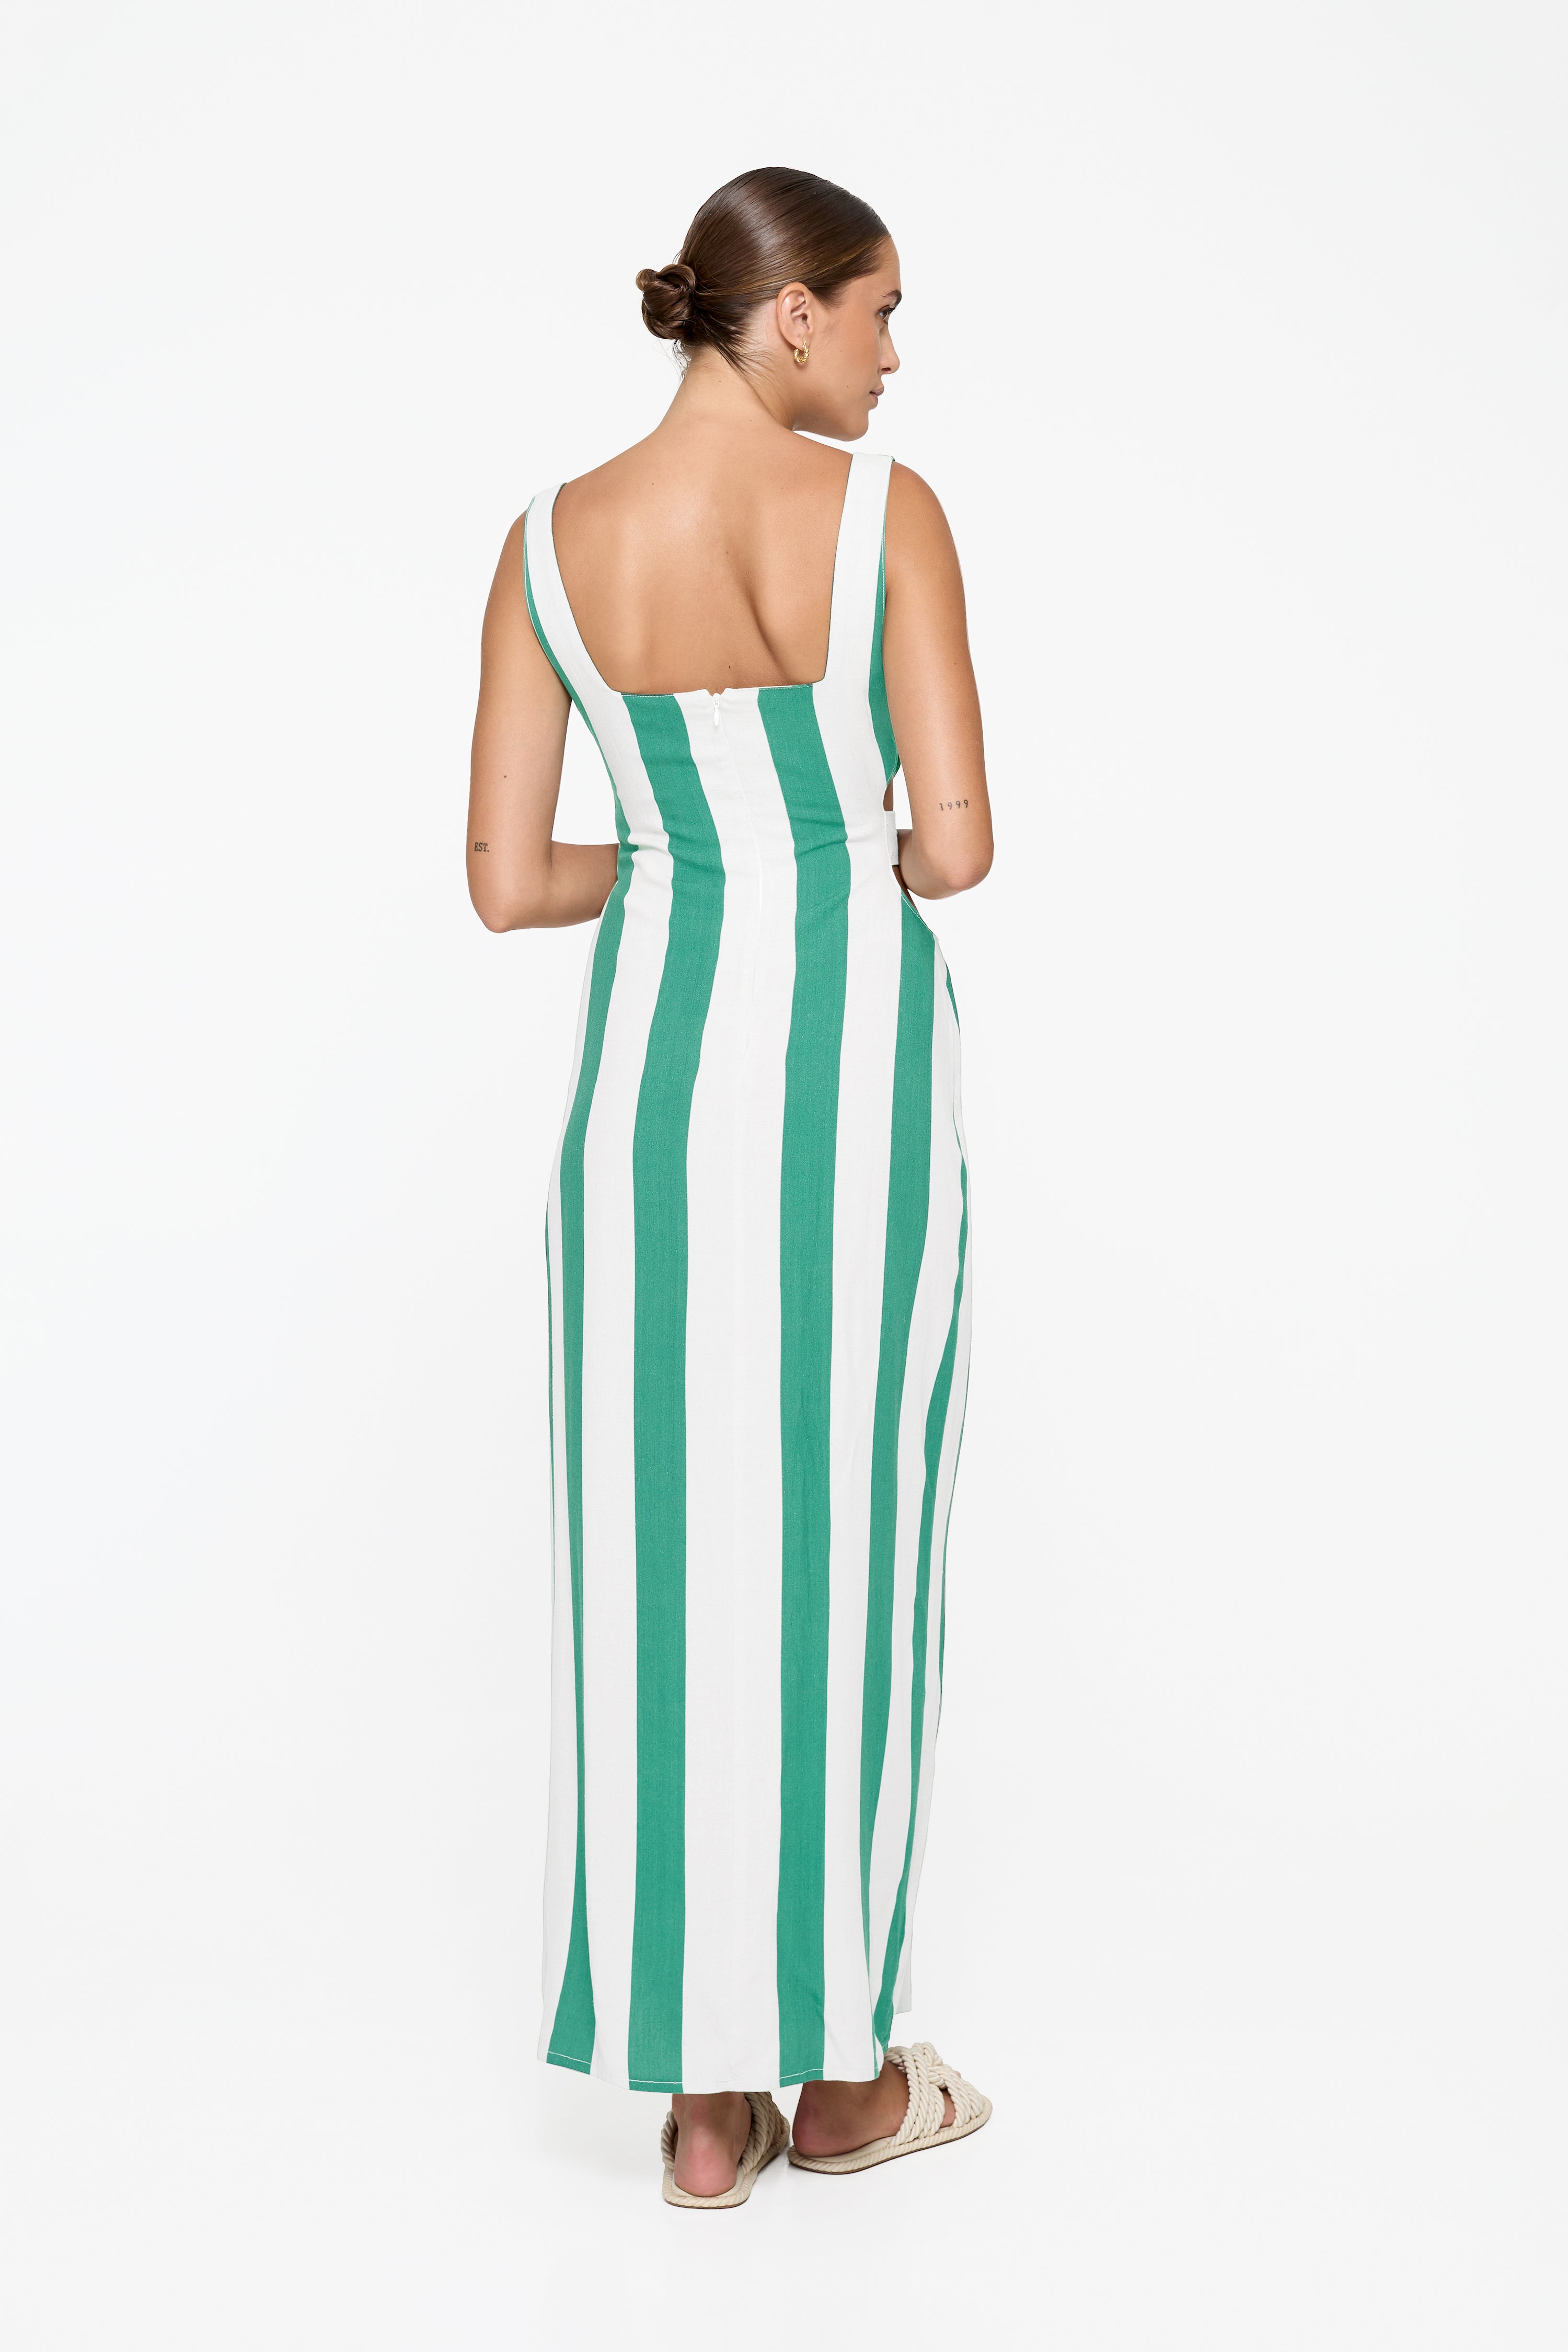 Evie Cutout Maxi Dress - Billiard Linen